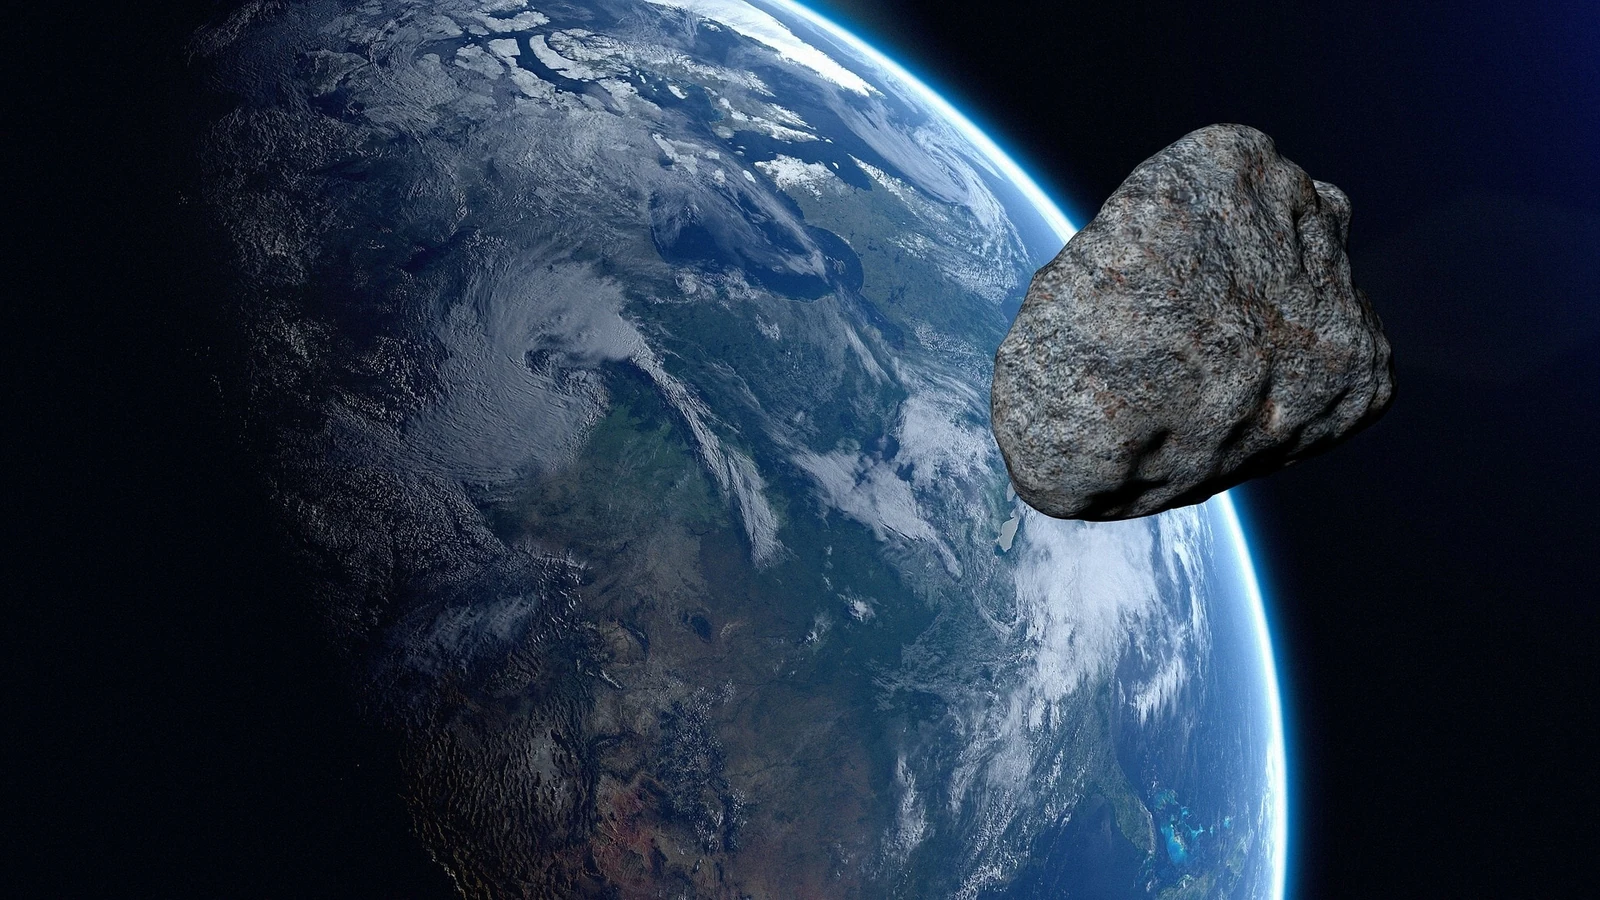 سیارک های خطرناک در حال آمدن هستند و این همان کاری است که چین انجام می دهد